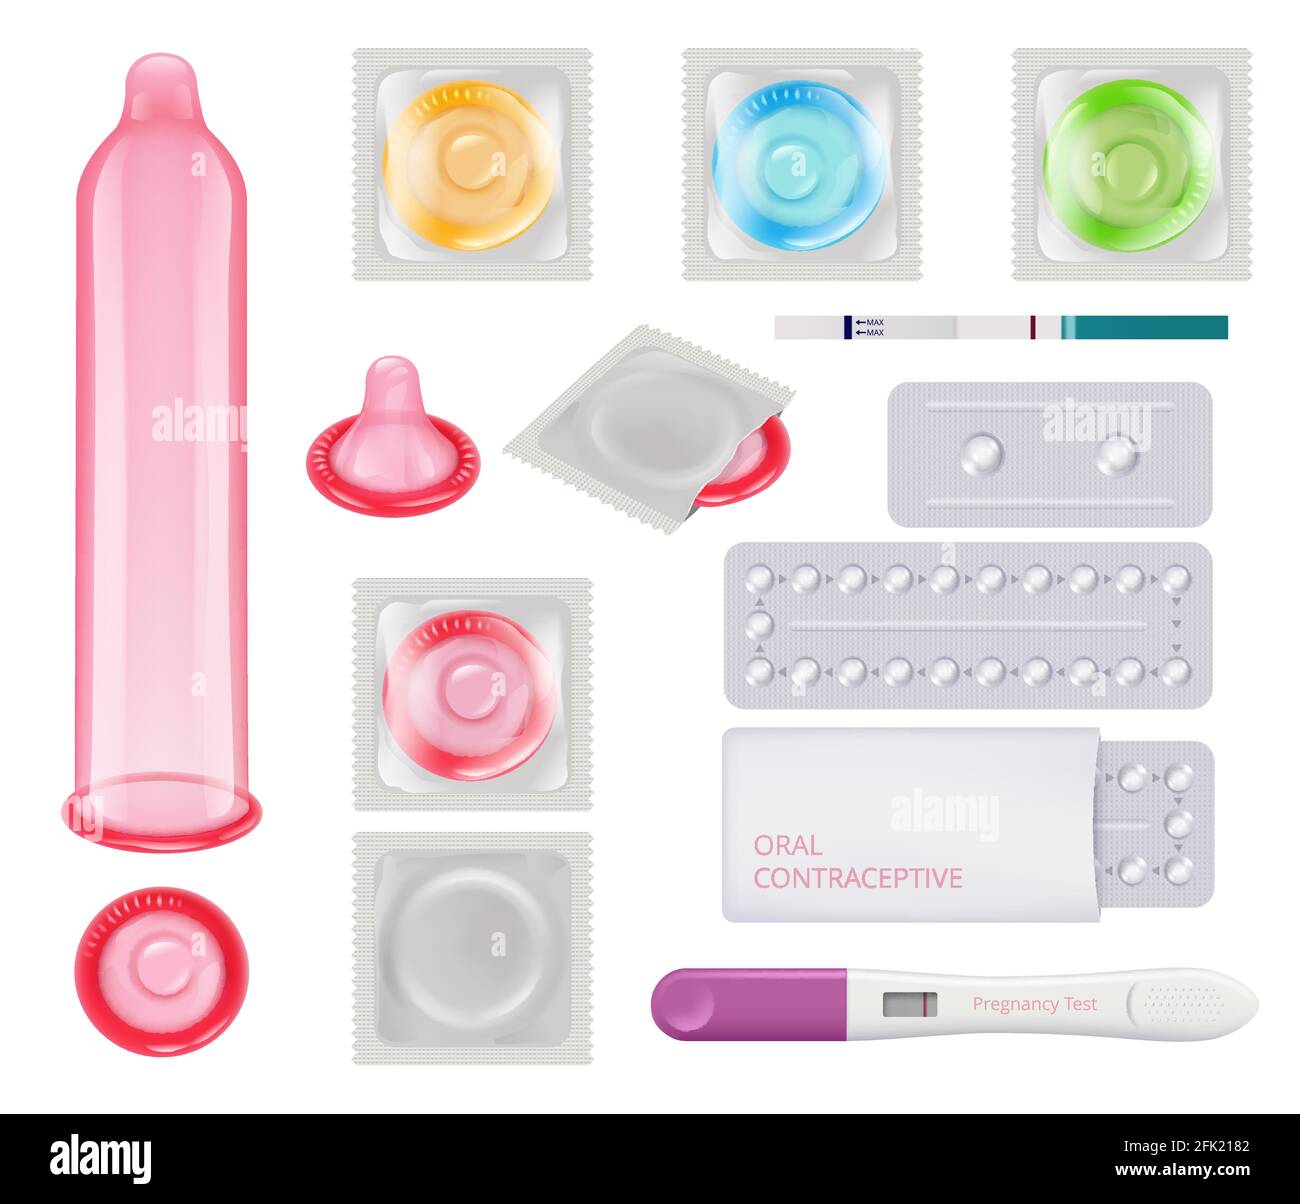 Contraceptif. Condoms femme test de grossesse ovulation calendrier pilules méthodes de contraception vecteur images réalistes Illustration de Vecteur